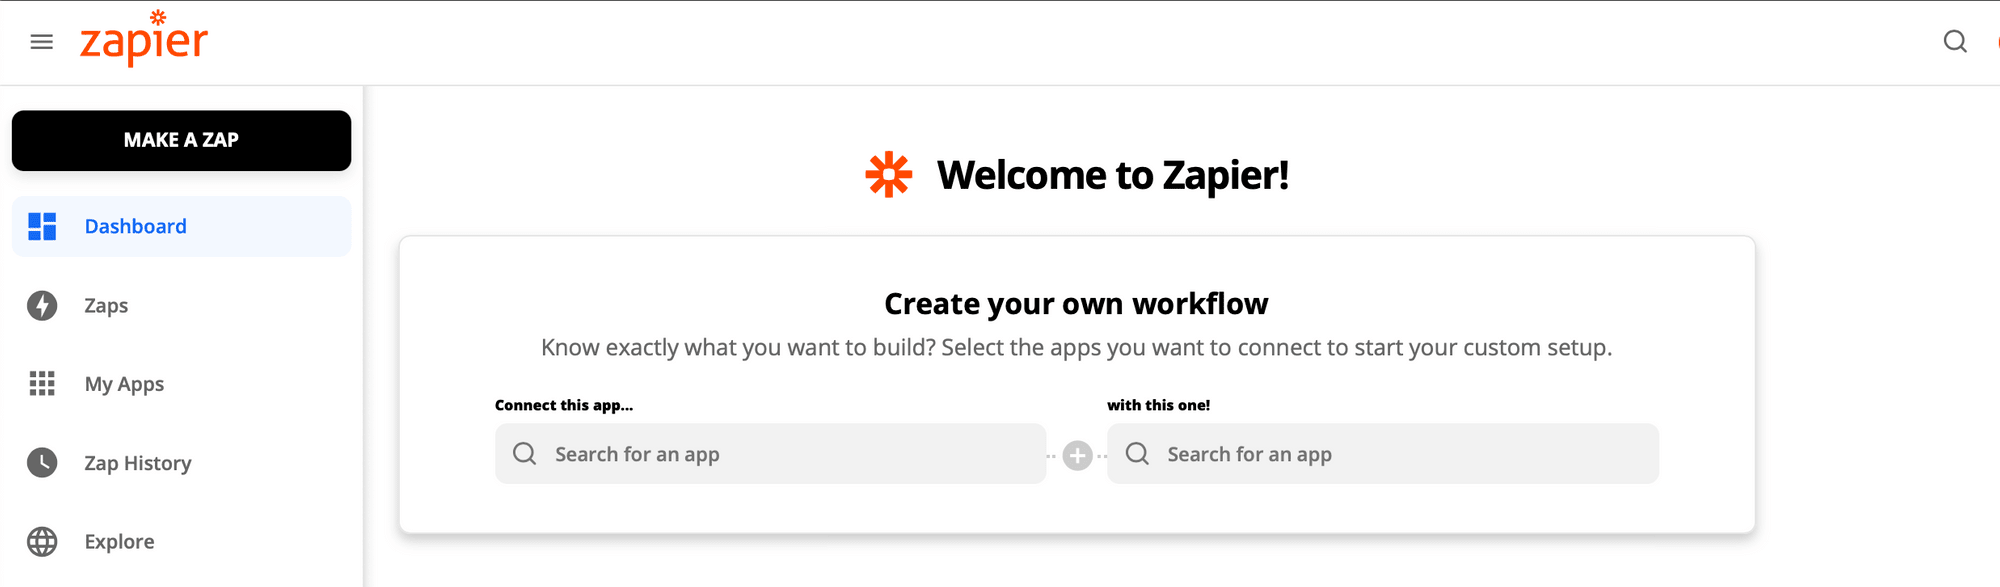 Screenshot of Zapier interface